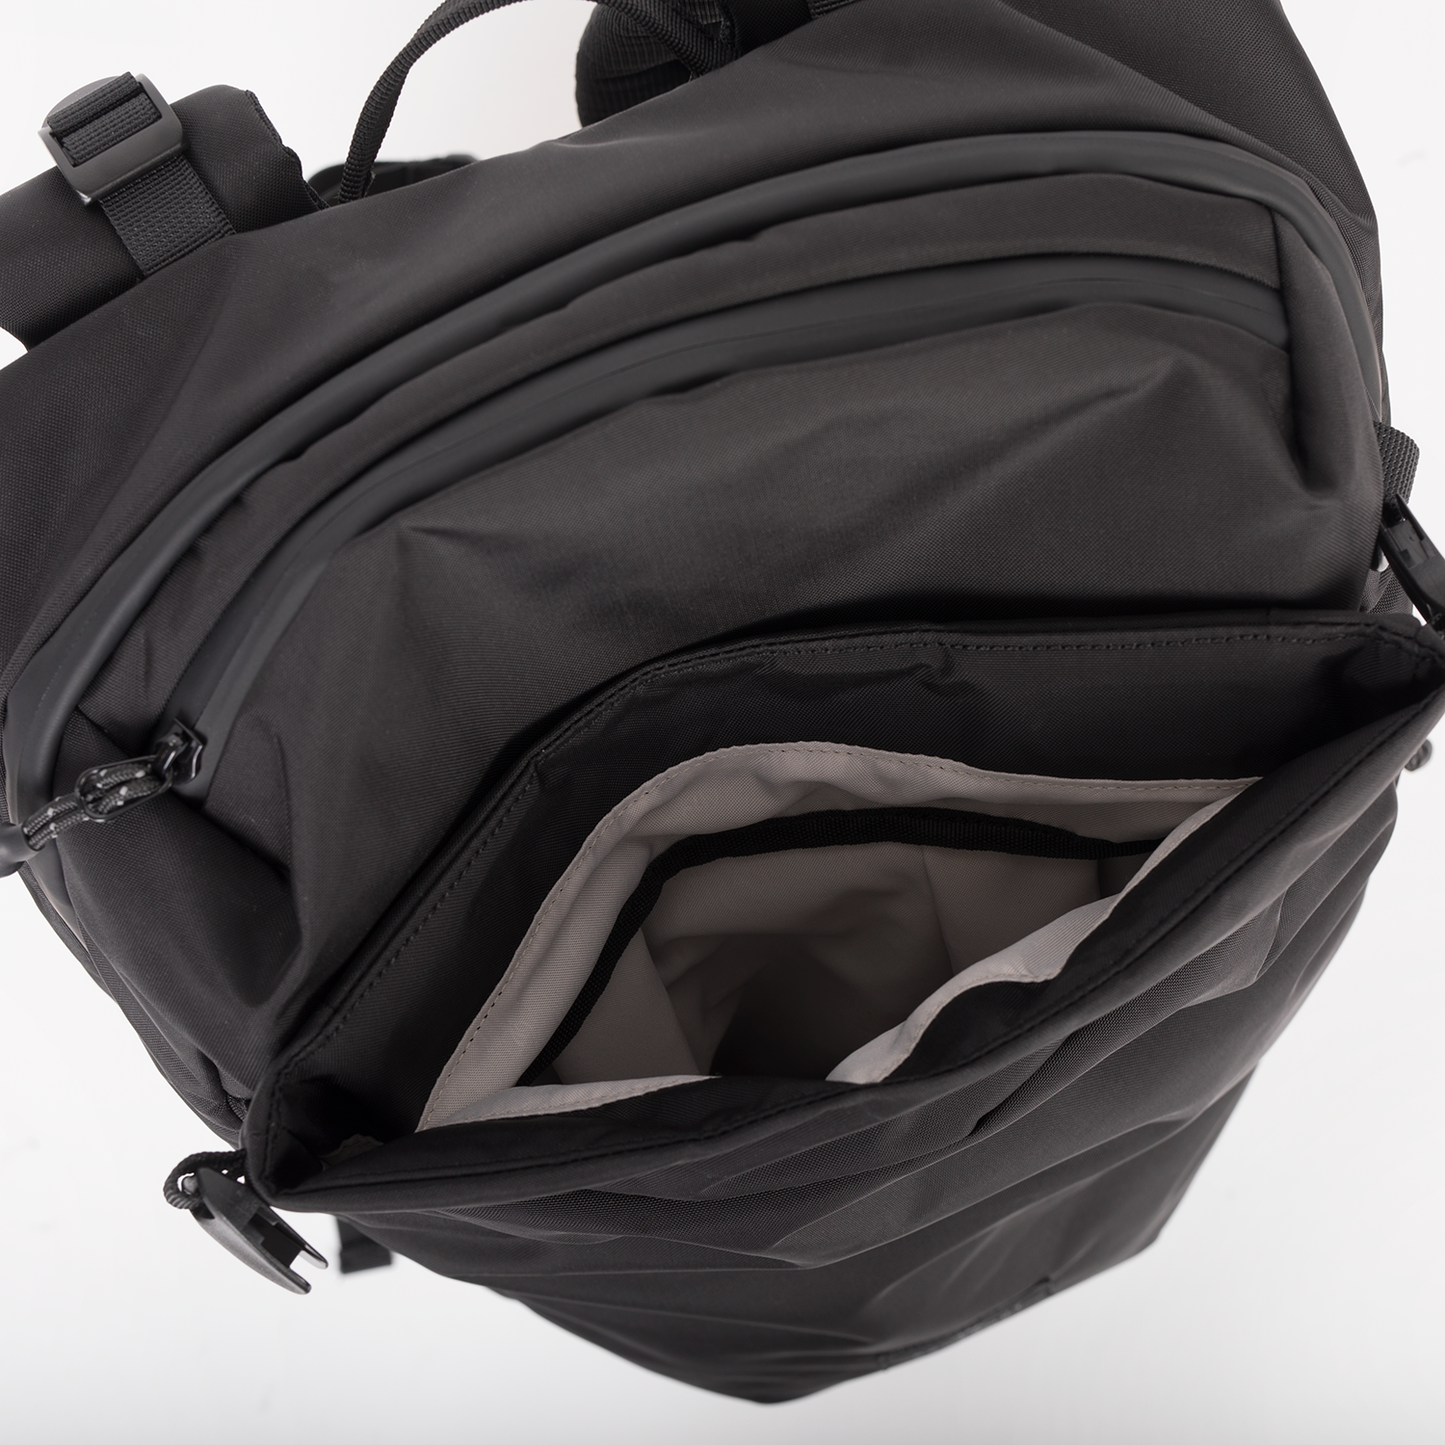 Astir Large Backpack